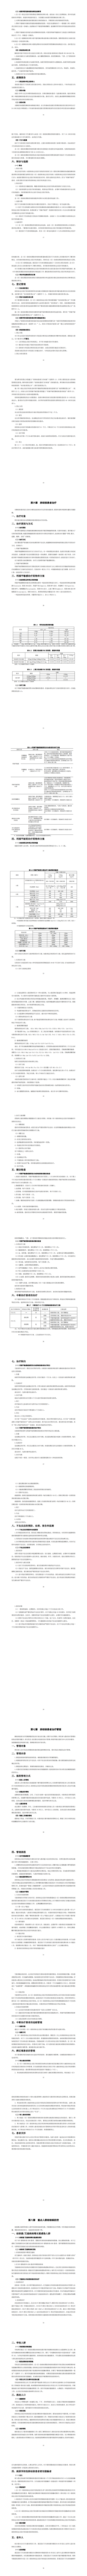 国卫办疾控函〔2020〕279号 国家卫生健康委办公厅关于印发中国结核病预防控制工作技术规范（2020年版）的通知_1.png